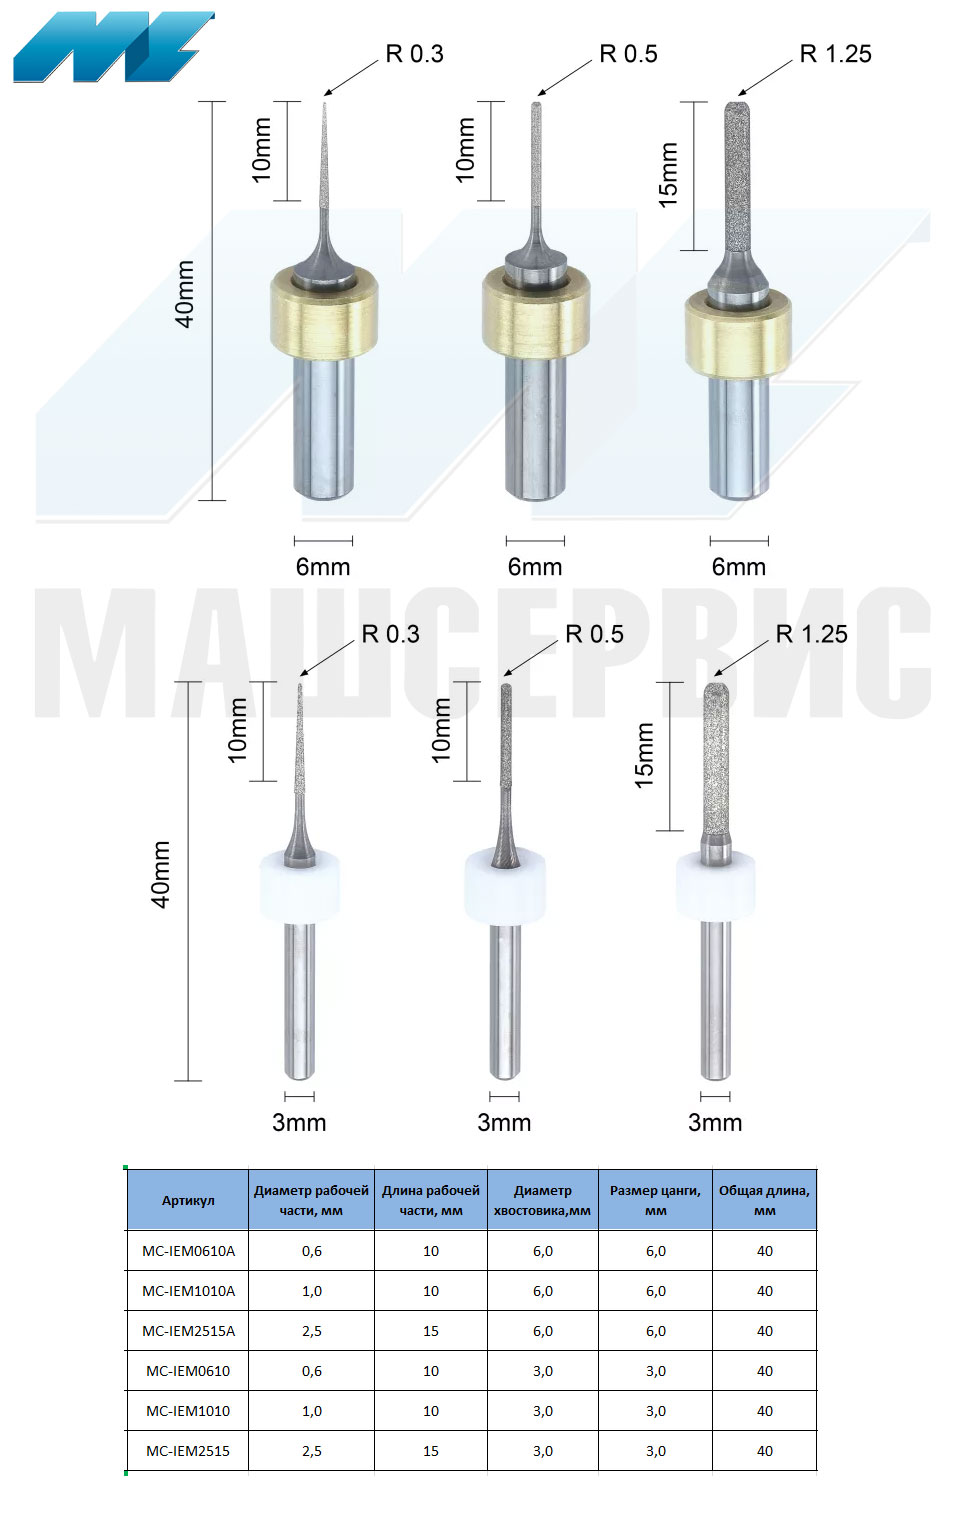 Фрезы для стоматологического оборудования imes-icore, серия Glass ceramic / e.max